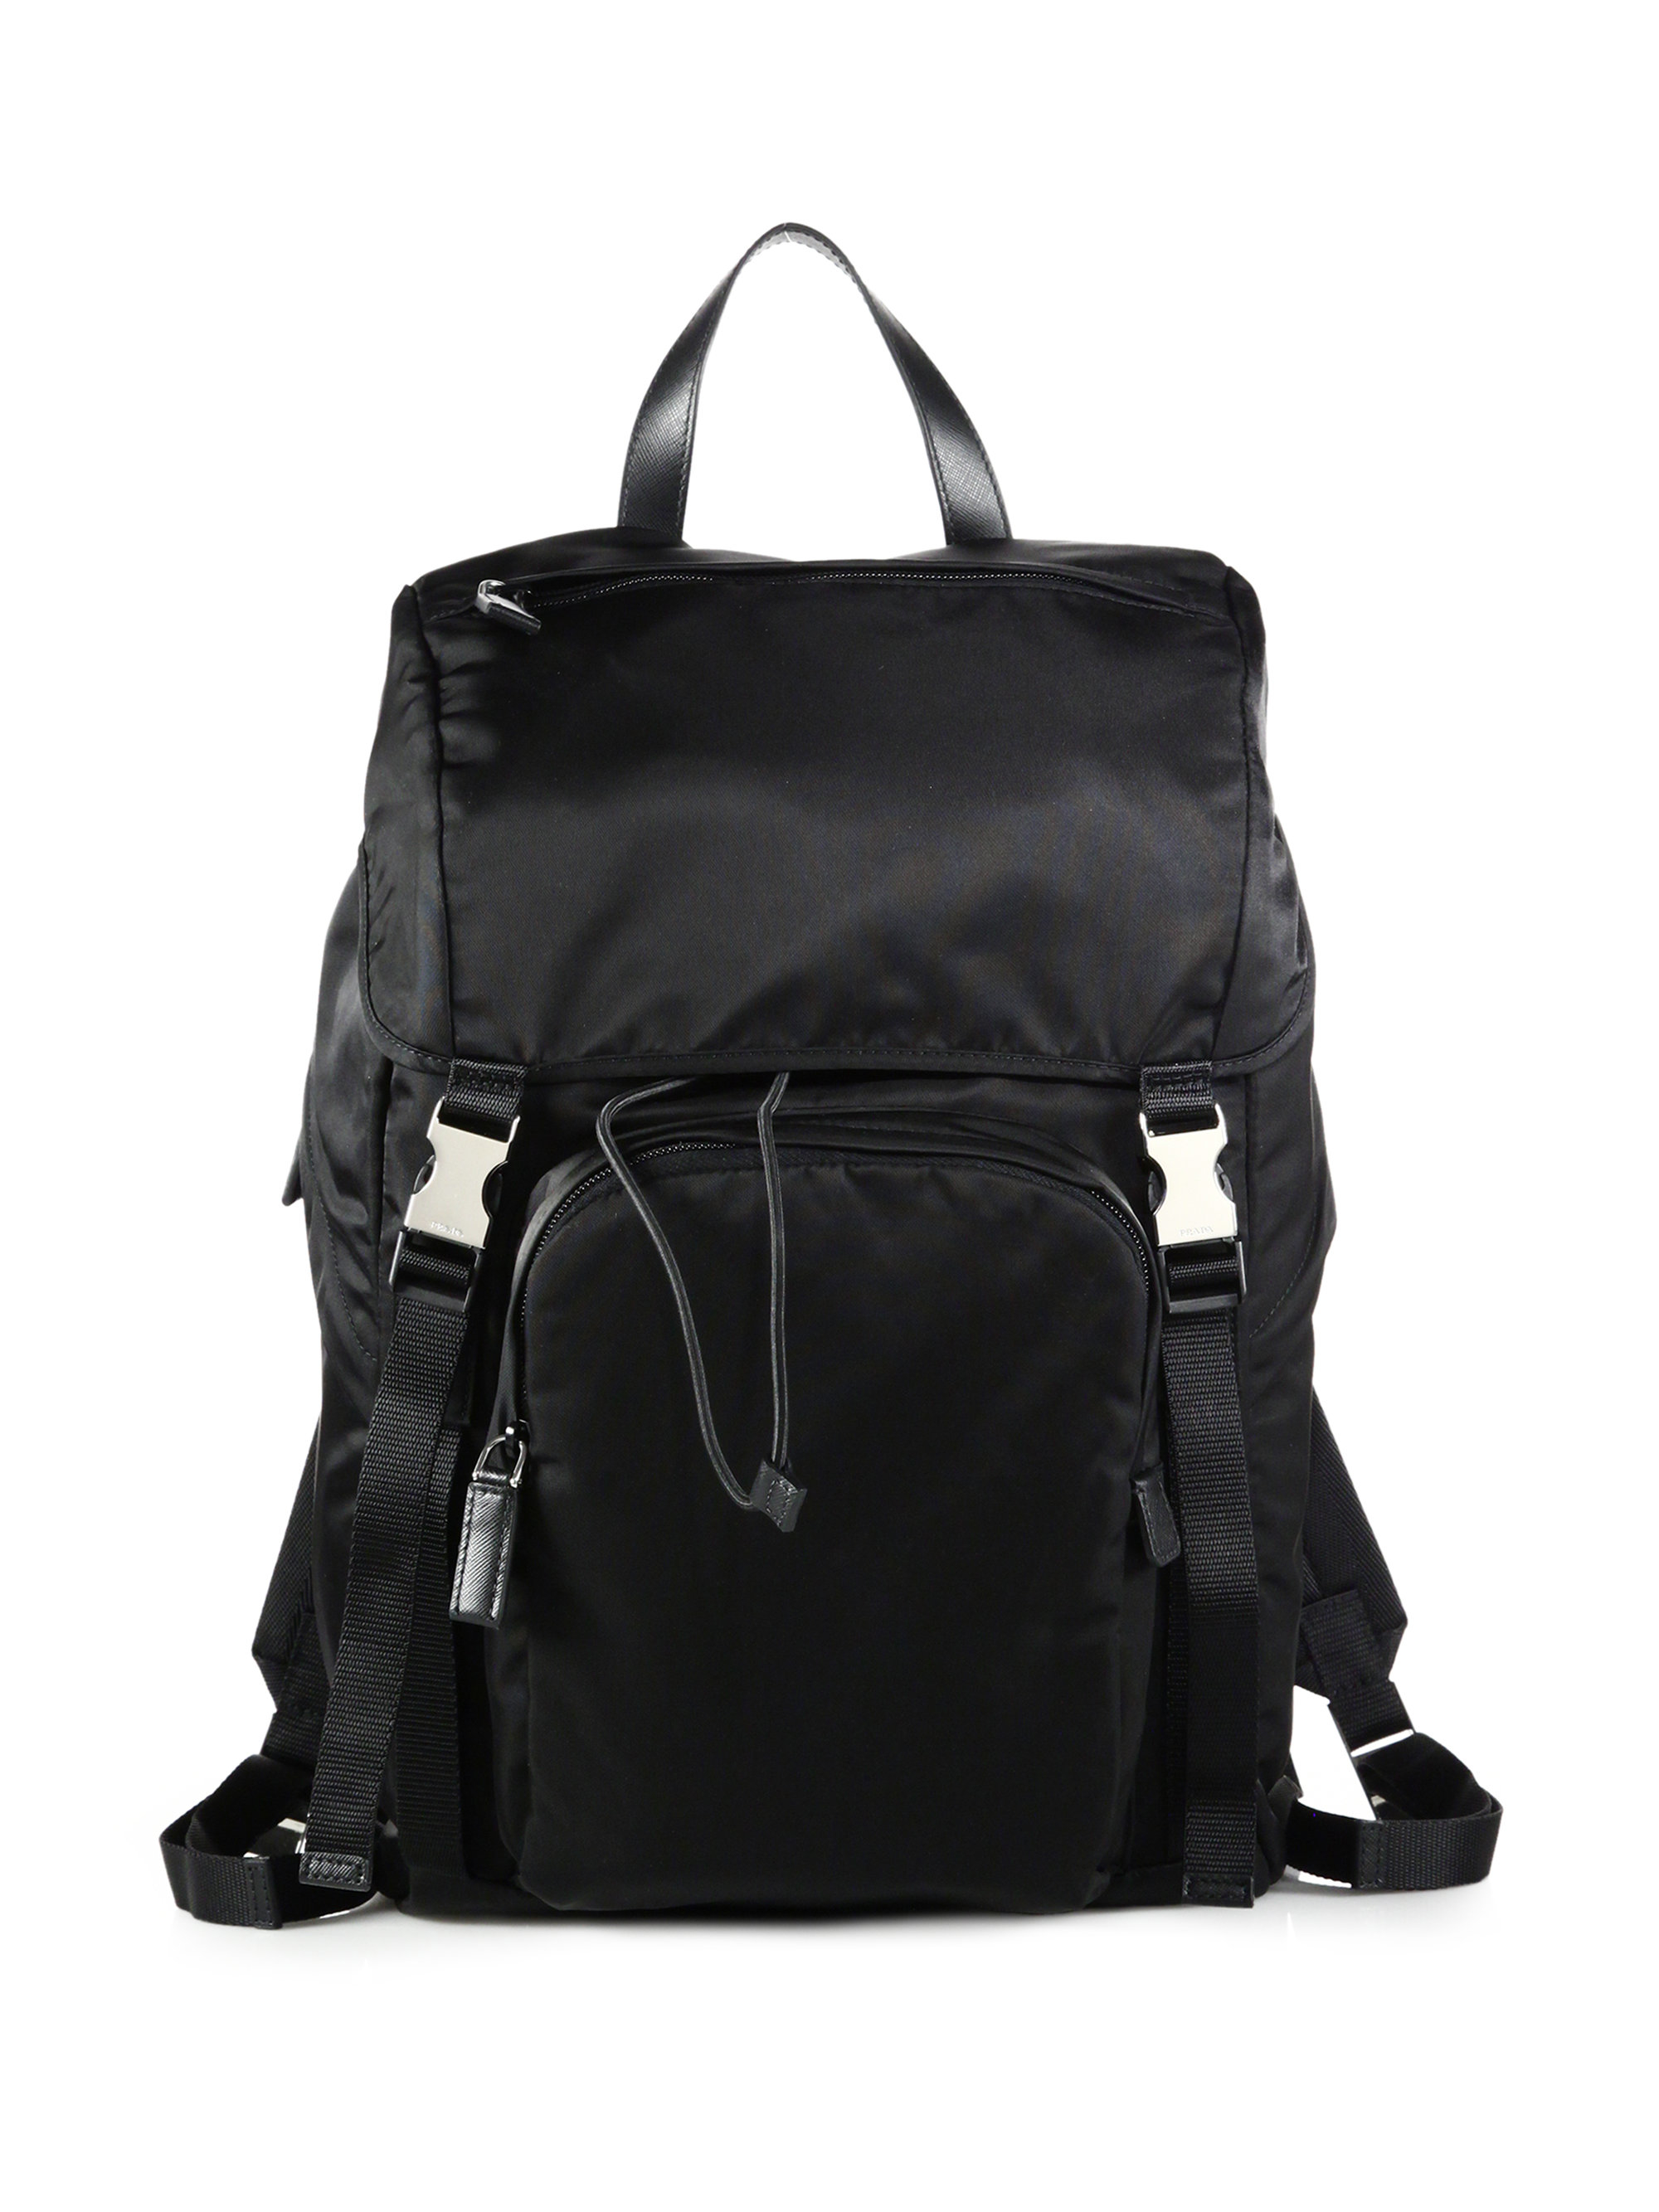 Black Nylon Backpack 83